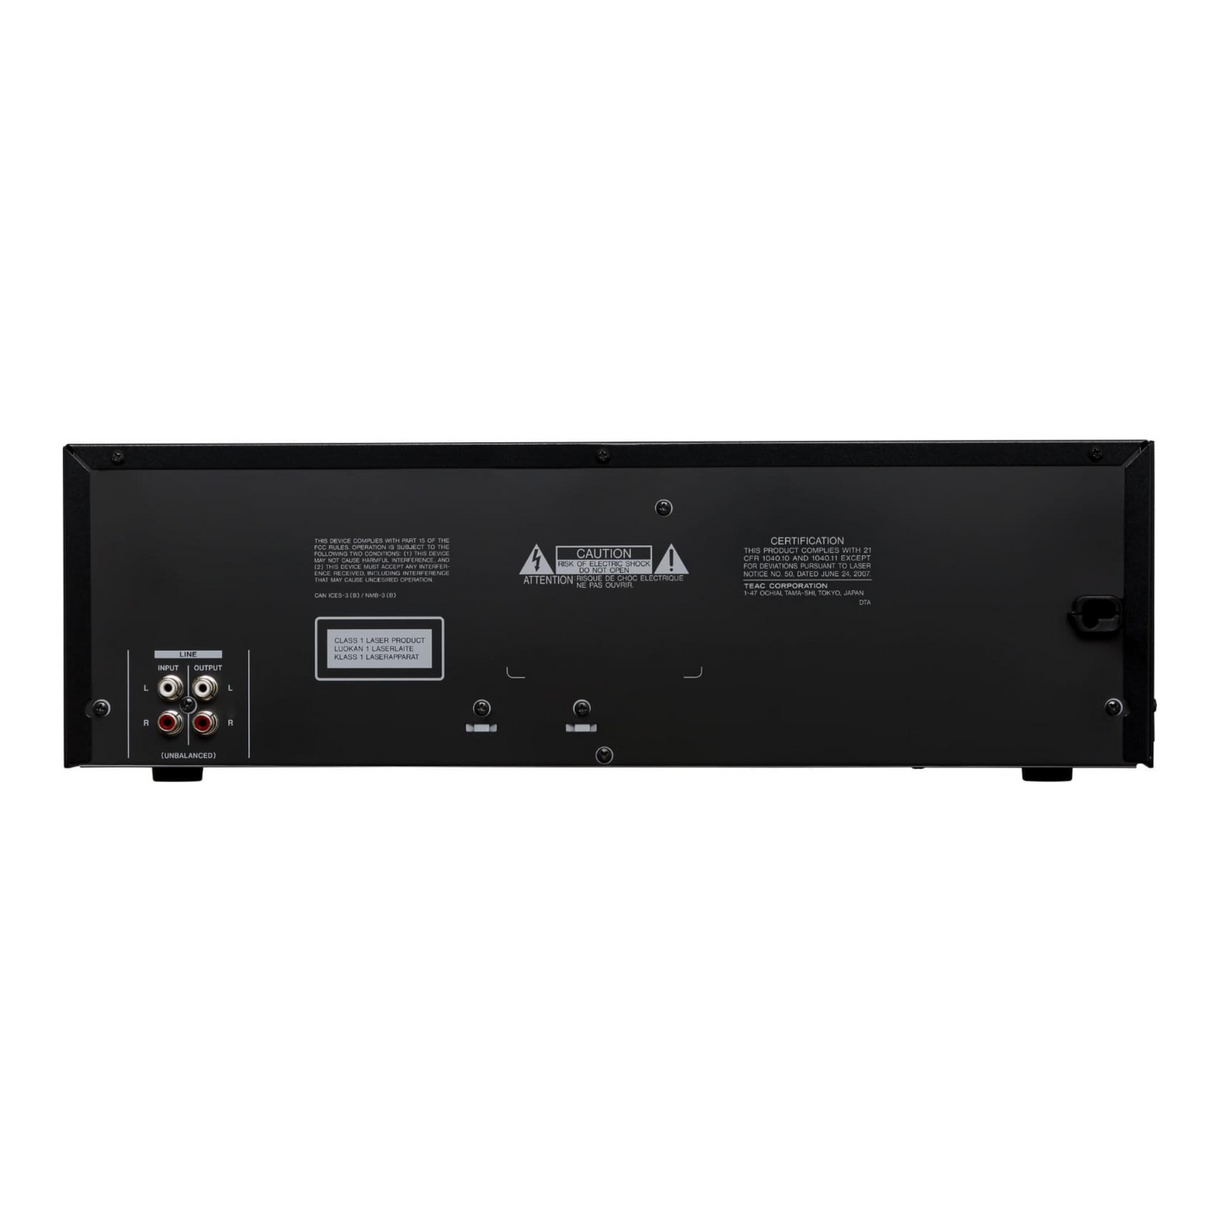 Tascam CD-A580 v2 CD Player / Cassette Deck / USB Recorder